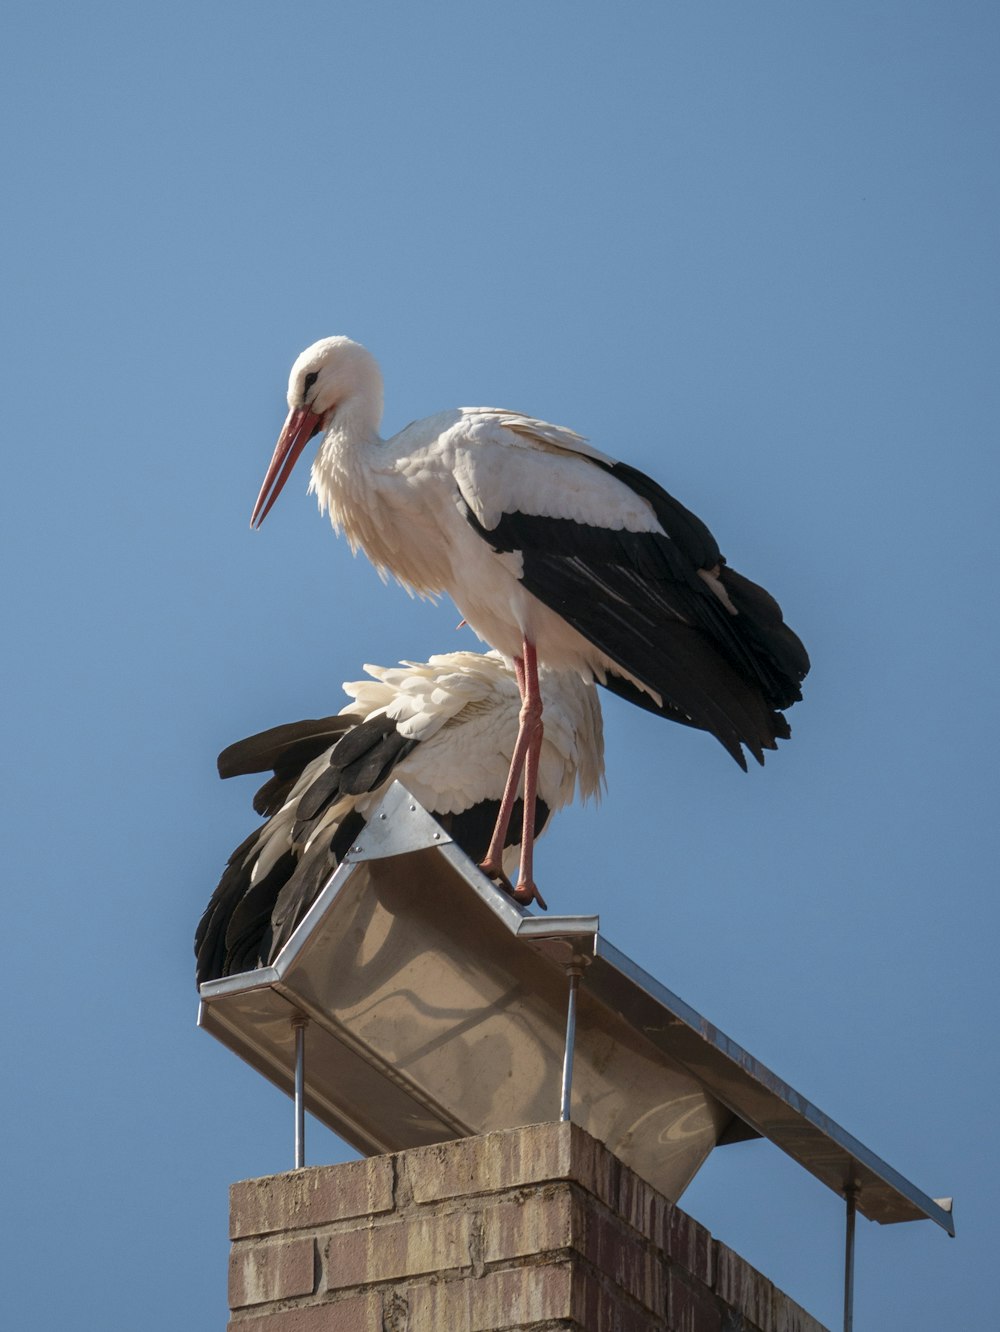 벽돌 굴뚝 위에 앉아있는 흰색과 검은 색 새